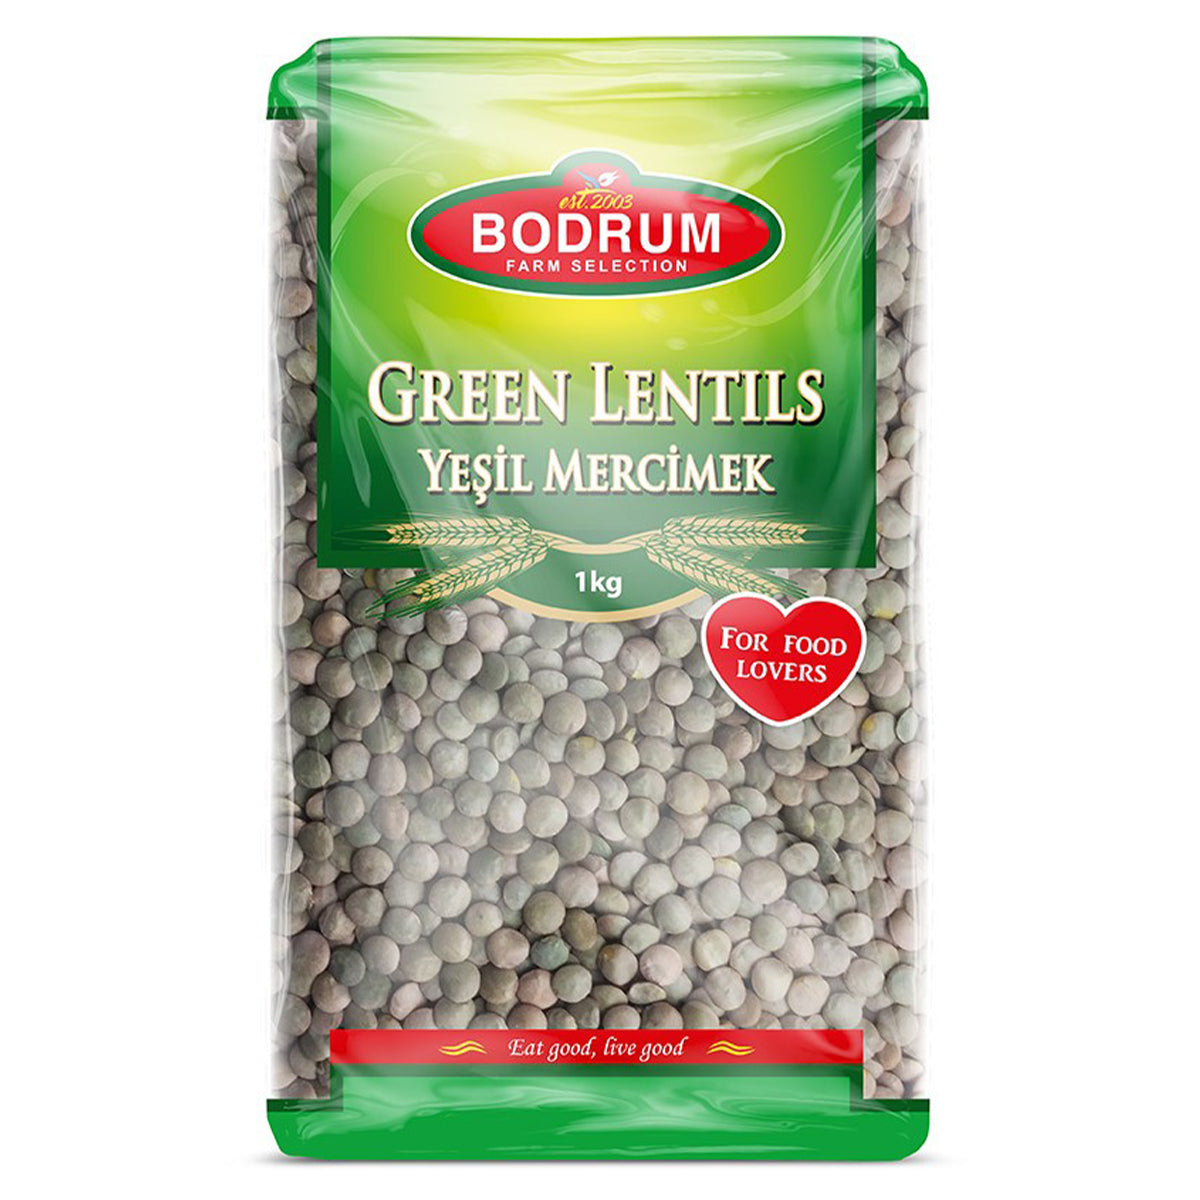 Bodrum - Green lentils - 1kg, in a bag.